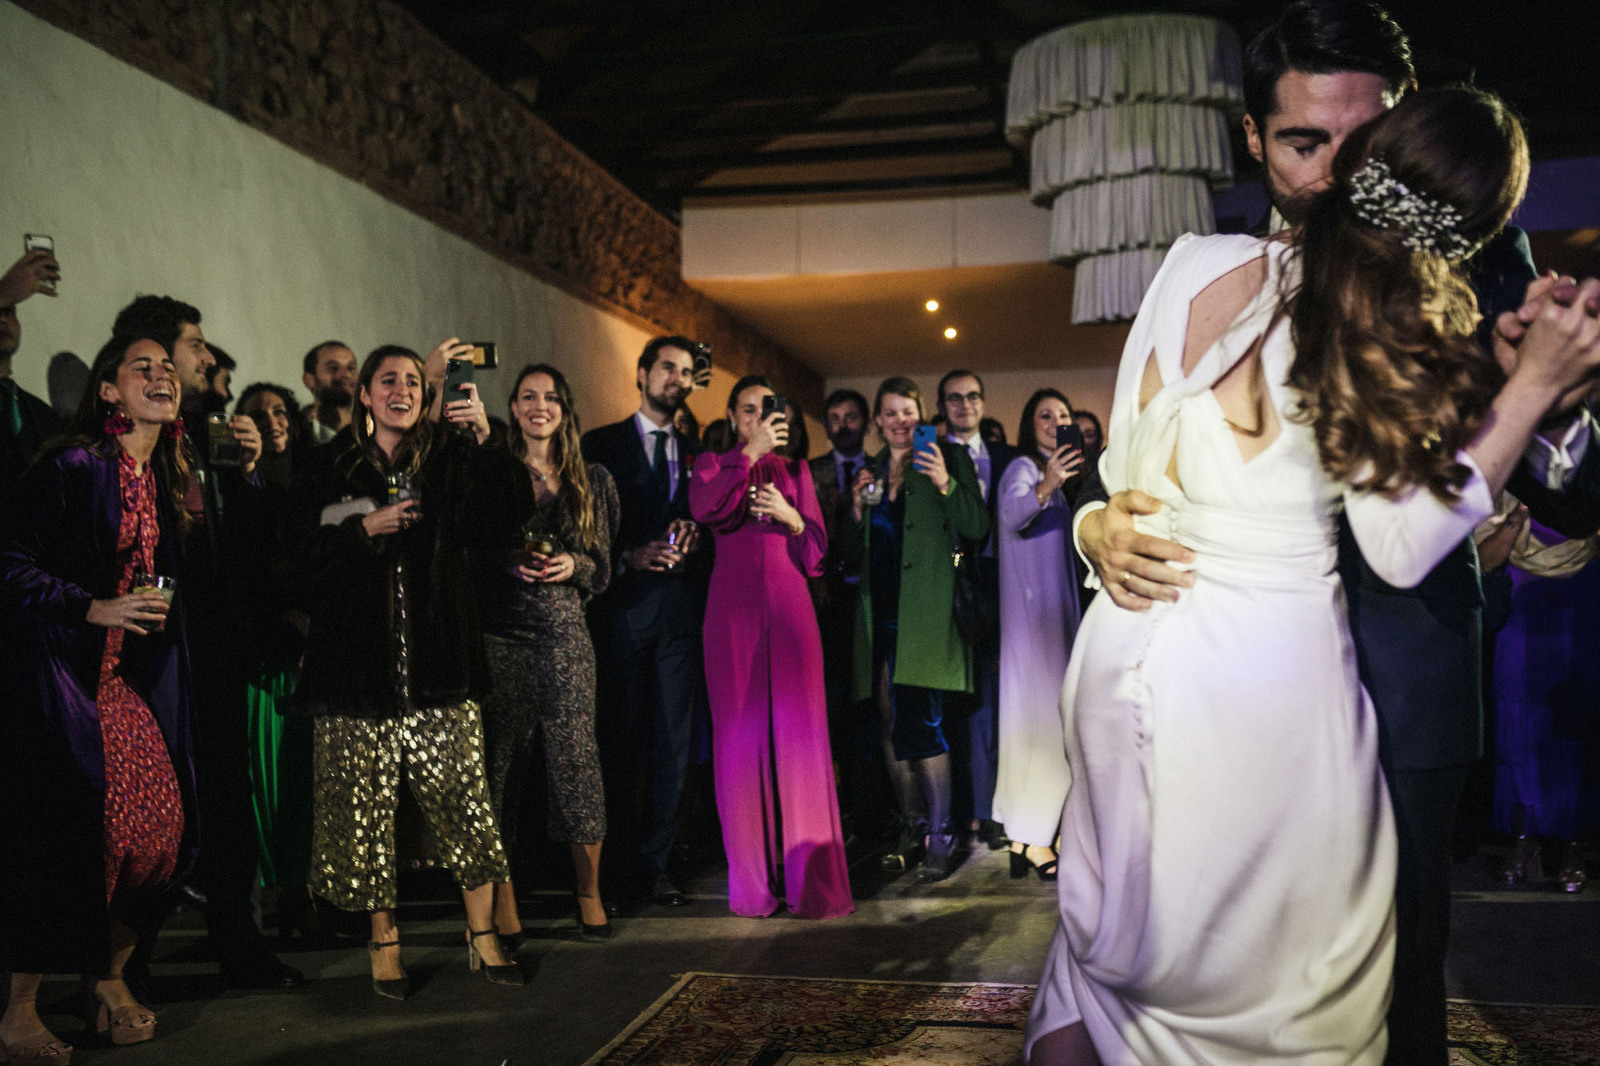 Fotografía de boda en Córdoba. Balneario Aguas de Villaharta. Juan Luis Morilla. Wedding photography in Córdoba.